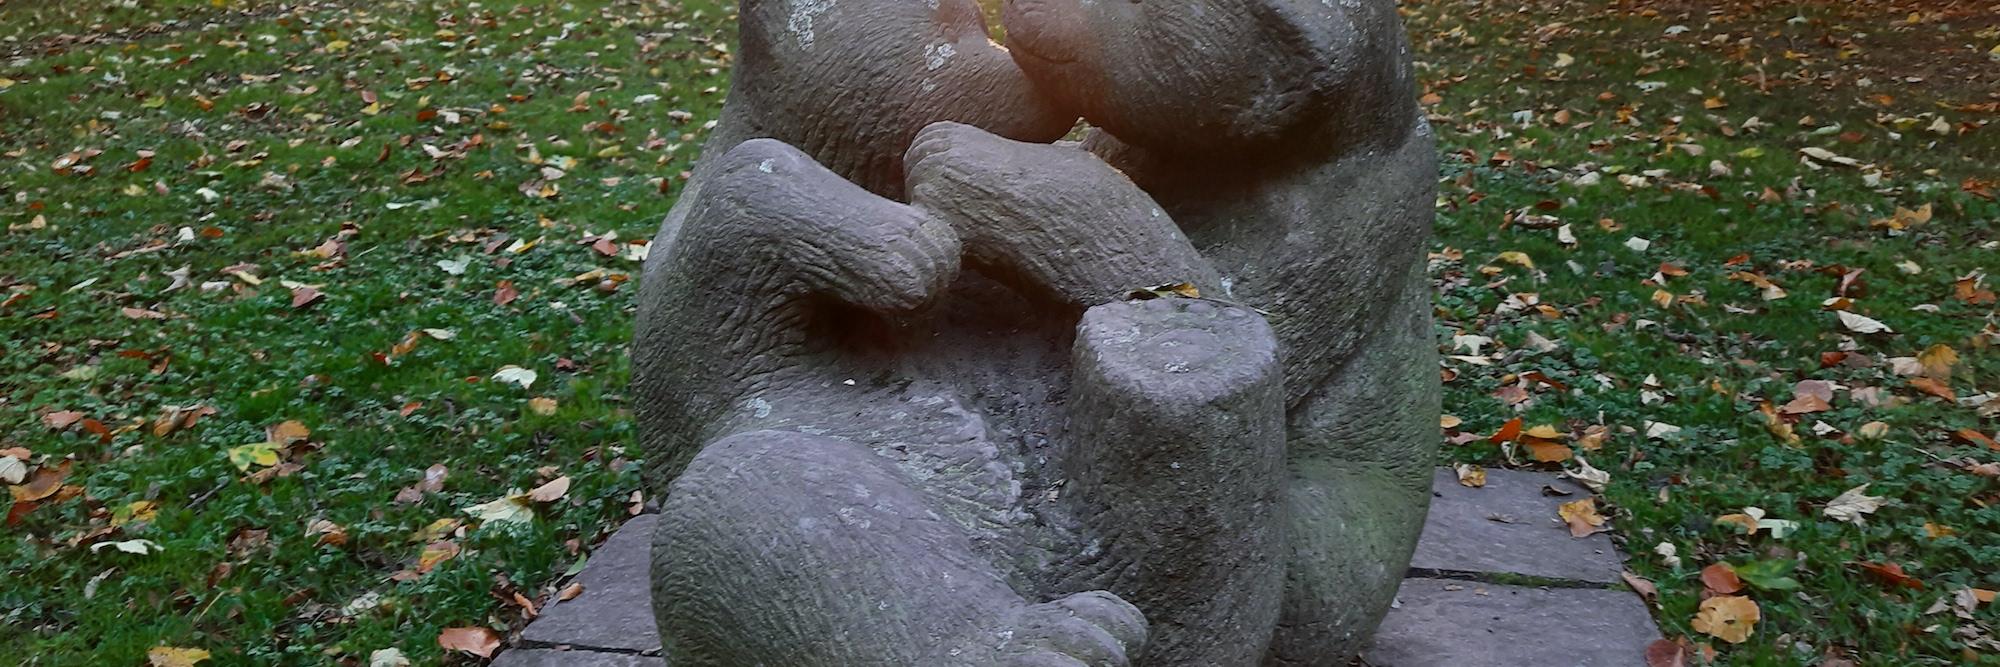 Die Figur der spielenden Bärenkinder ist ein tröstlicher Anblick.